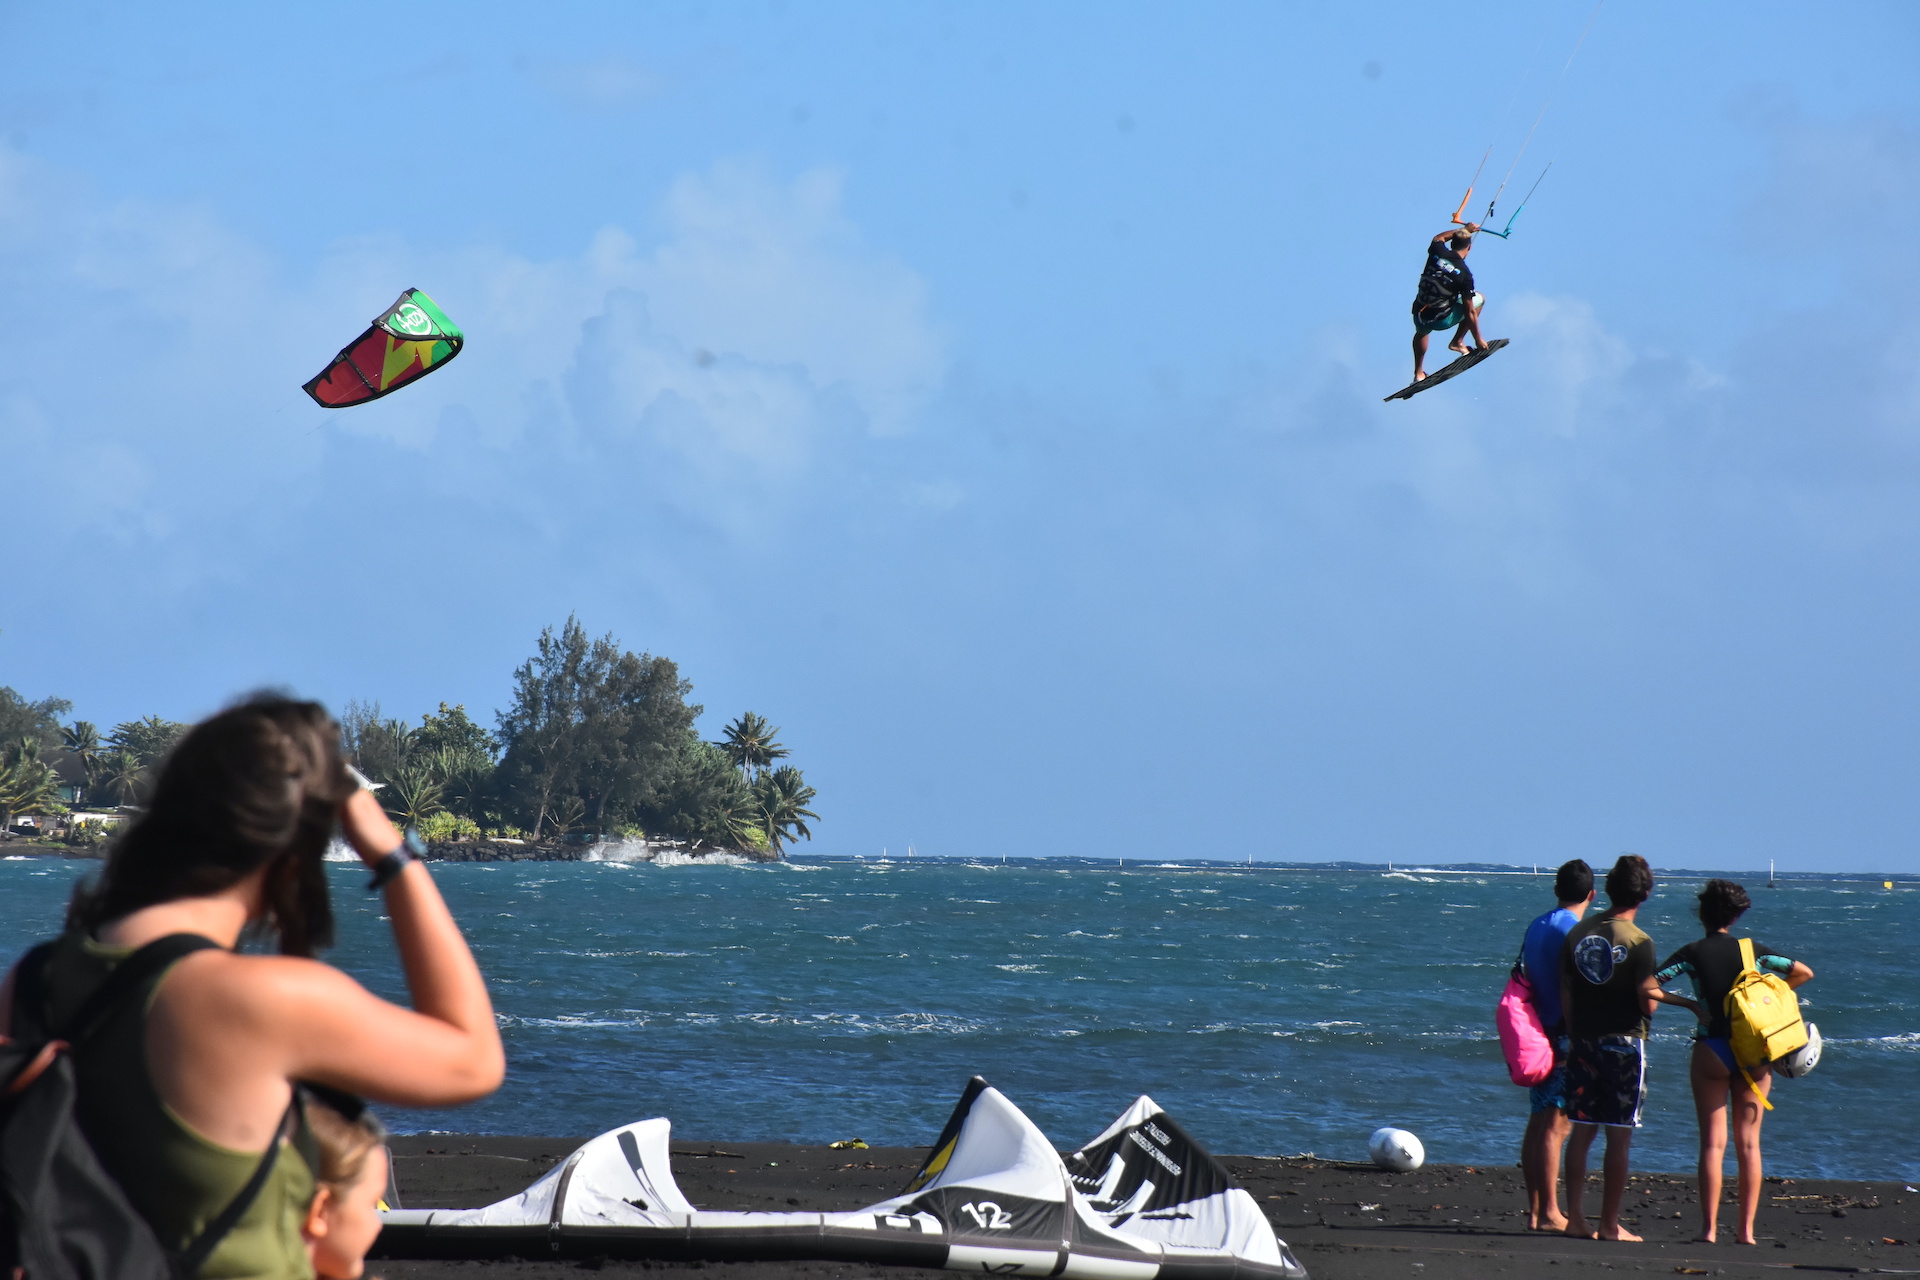 La première édition de la Tahiti Big Air Contest avait rassemblé 25 riders. Un vent oscillant entre 20 et 25 nœuds (35 et 45 km/h) avait alors permis aux athlètes d'offrir une compétition spectaculaire sur la plage de Hitimahana, à Mahina.